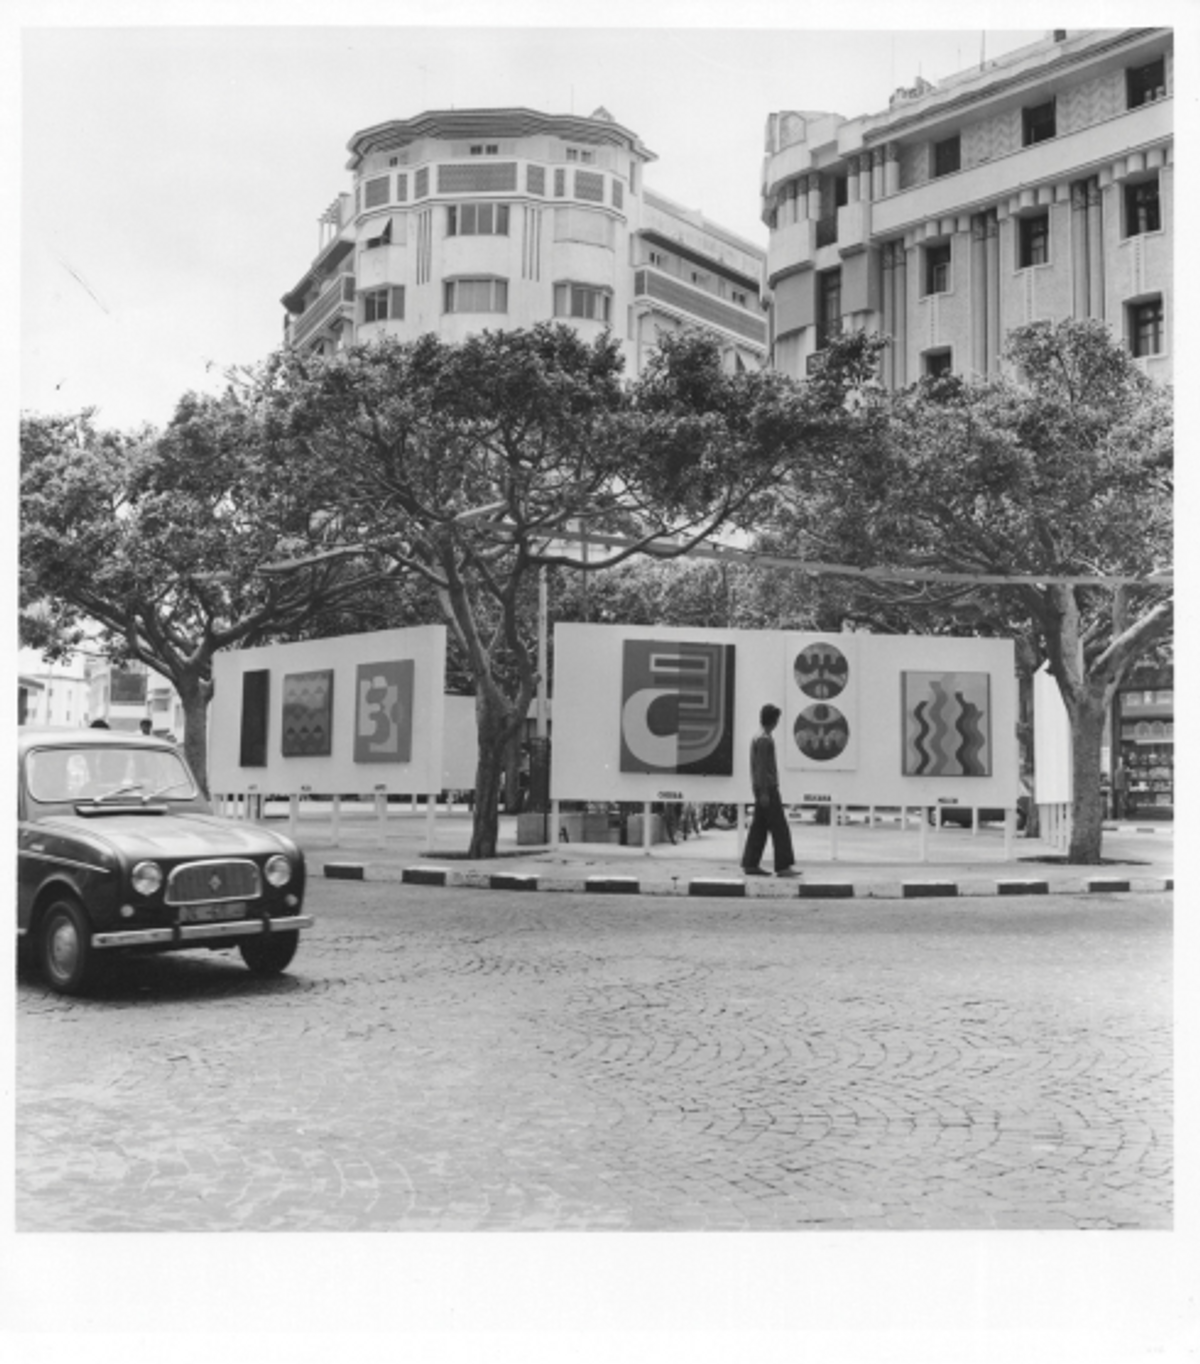 Vue de l’exposition-manifeste « Présence plastique », place du 16-Novembre, Casablanca, juin 1969. © M. Melehi archives/estate